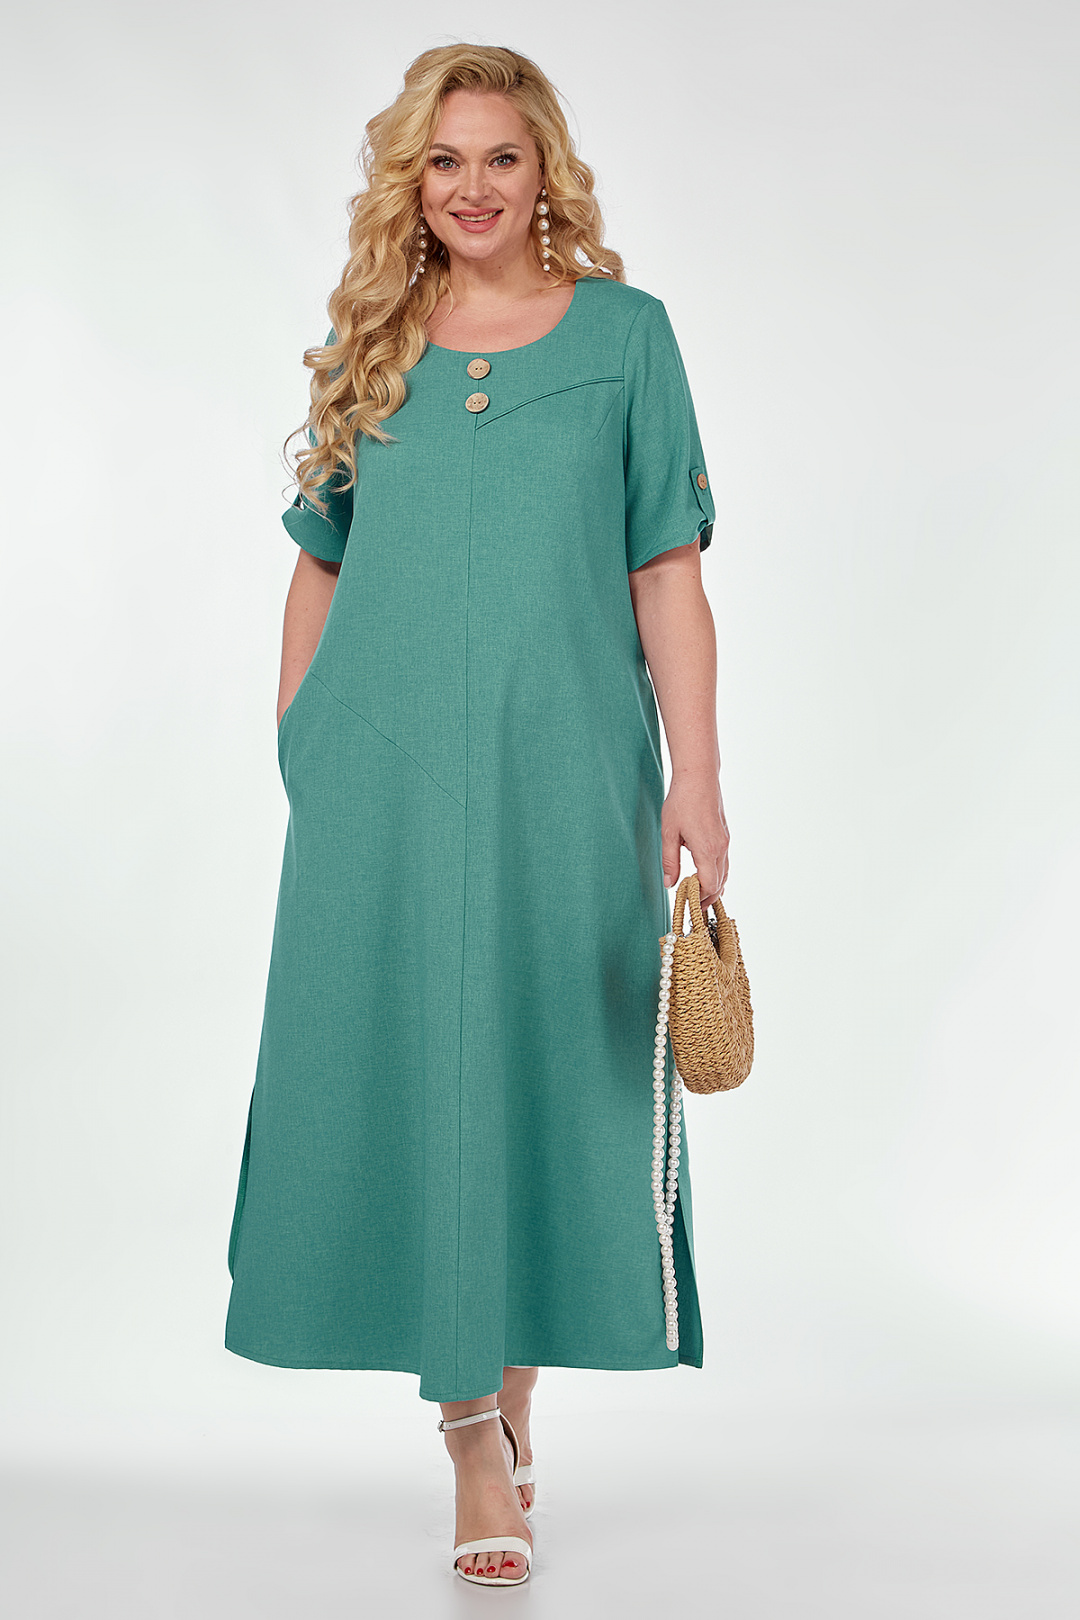 Платье ALGRANDA (Новелла Шарм) 3984-4